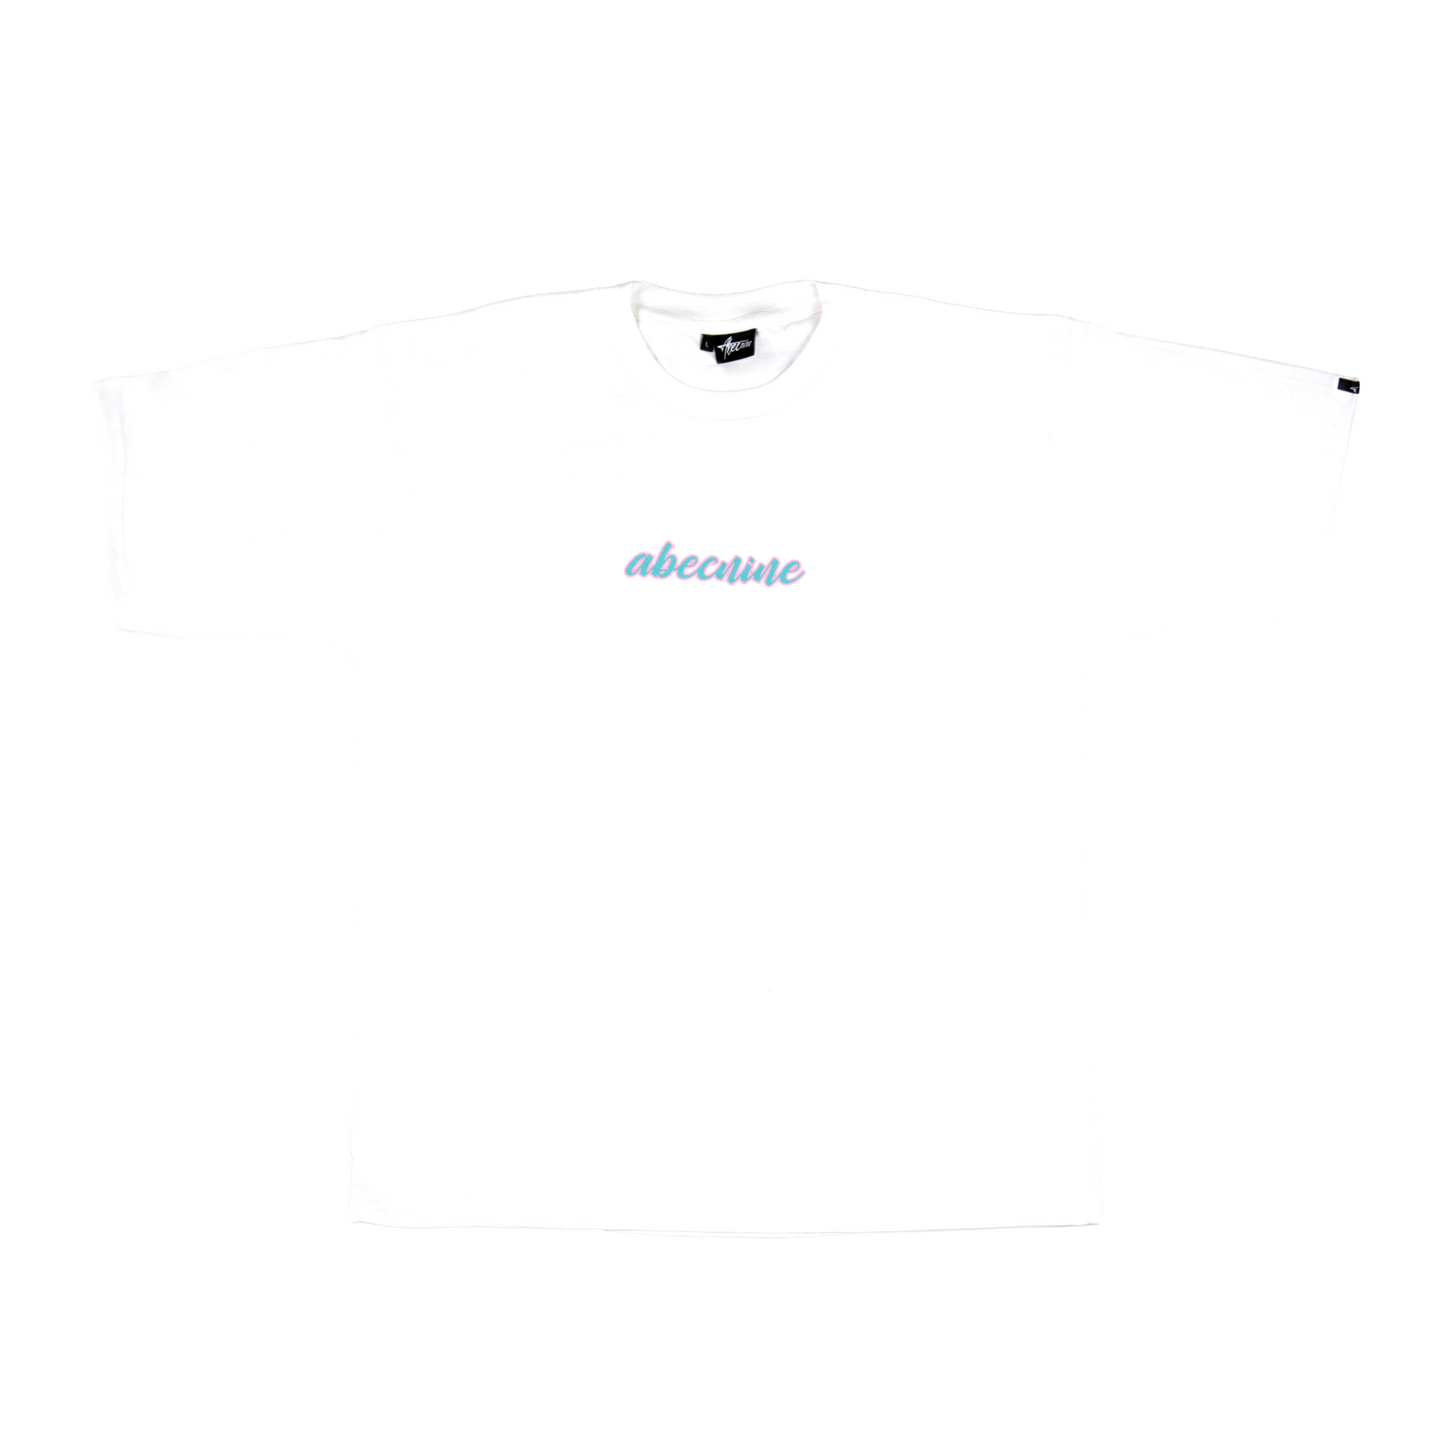 T-Shirt Abecnine Retro White